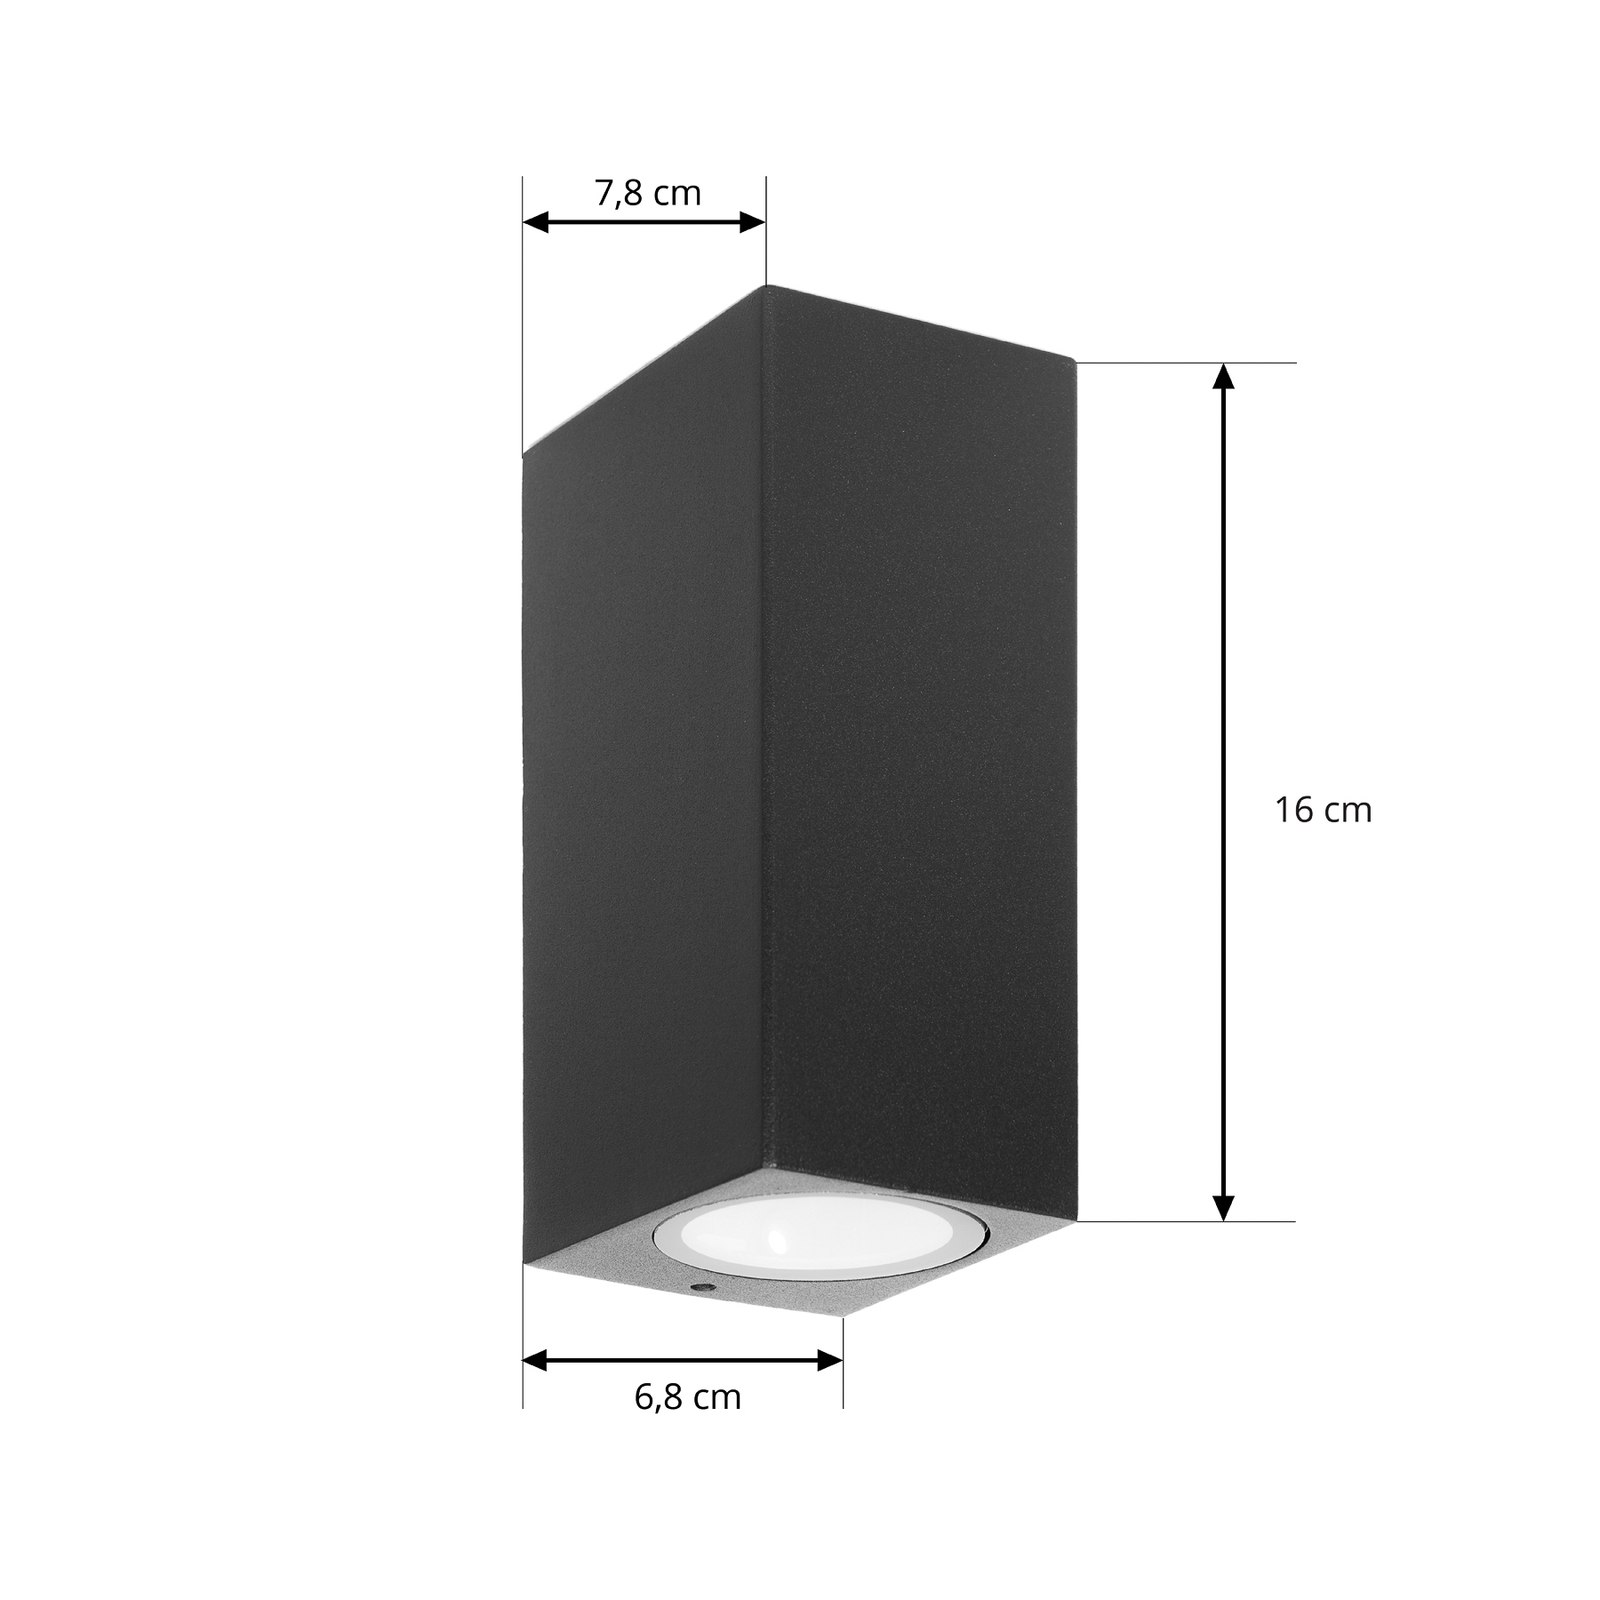 Venkovní nástěnné svítidlo Prios Tetje, černé, hranaté, 16 cm, sada 4 ks